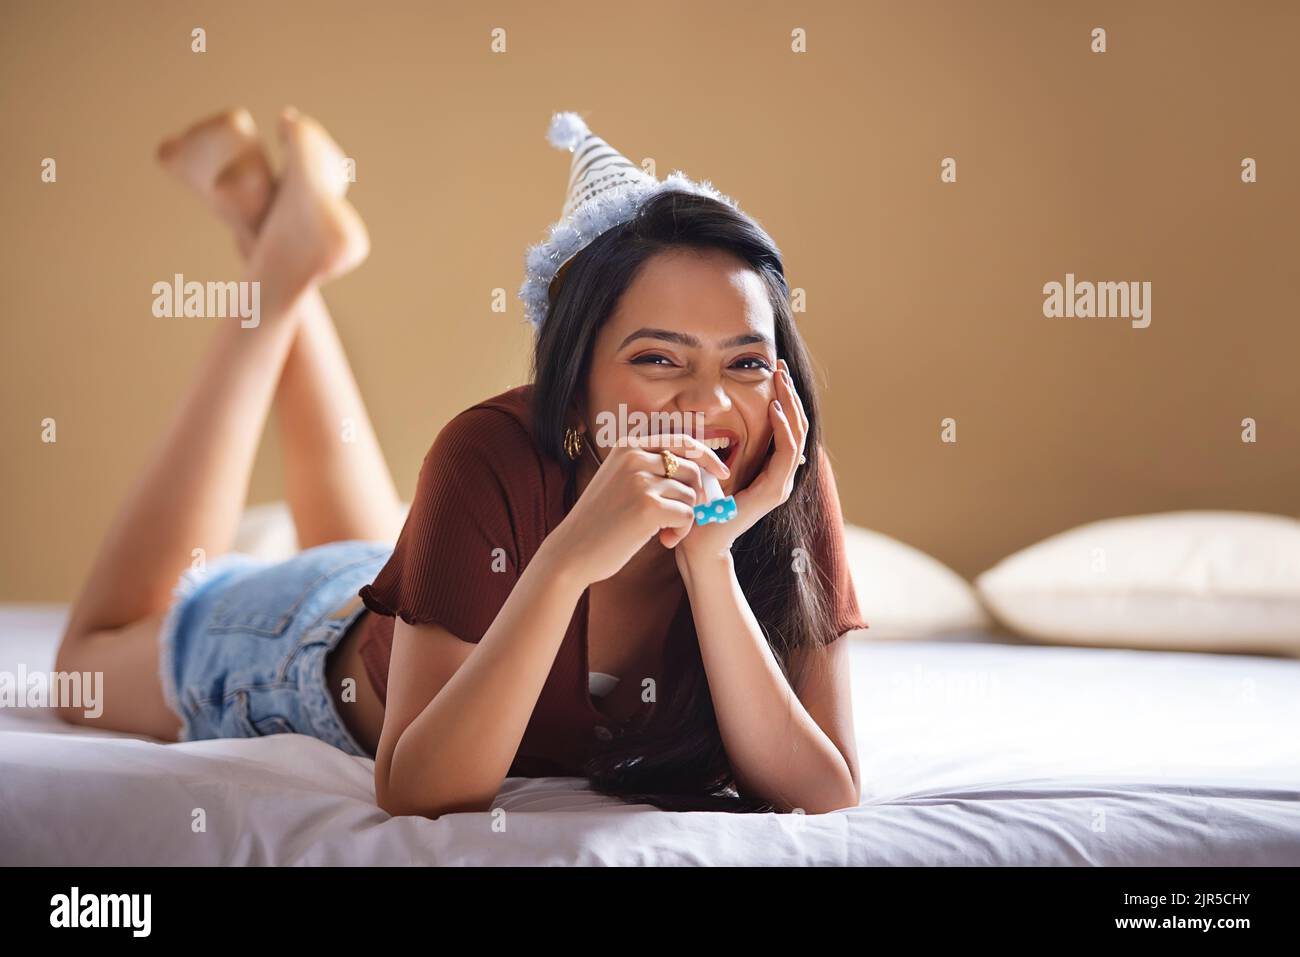 Glückliche junge Frau mit Geburtstagshut, die auf dem Bett liegt und ihr Kinn auf der Hand liegt Stockfoto